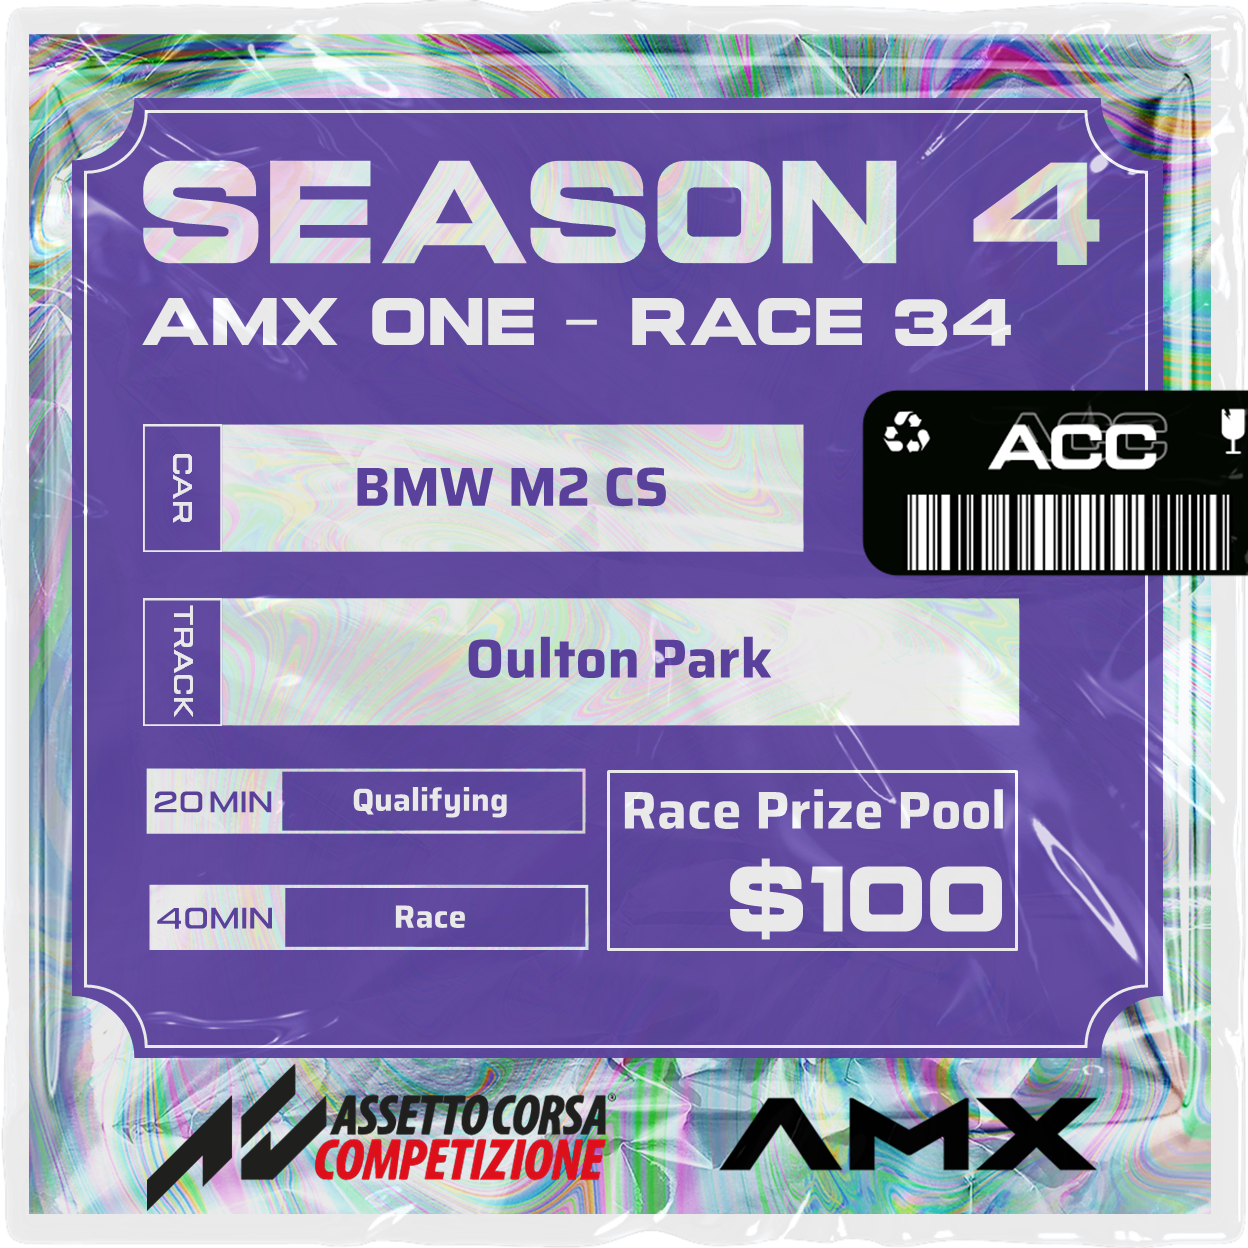 AMX ONE - RACE 34 [4/21 - 5:50 PM GMT]